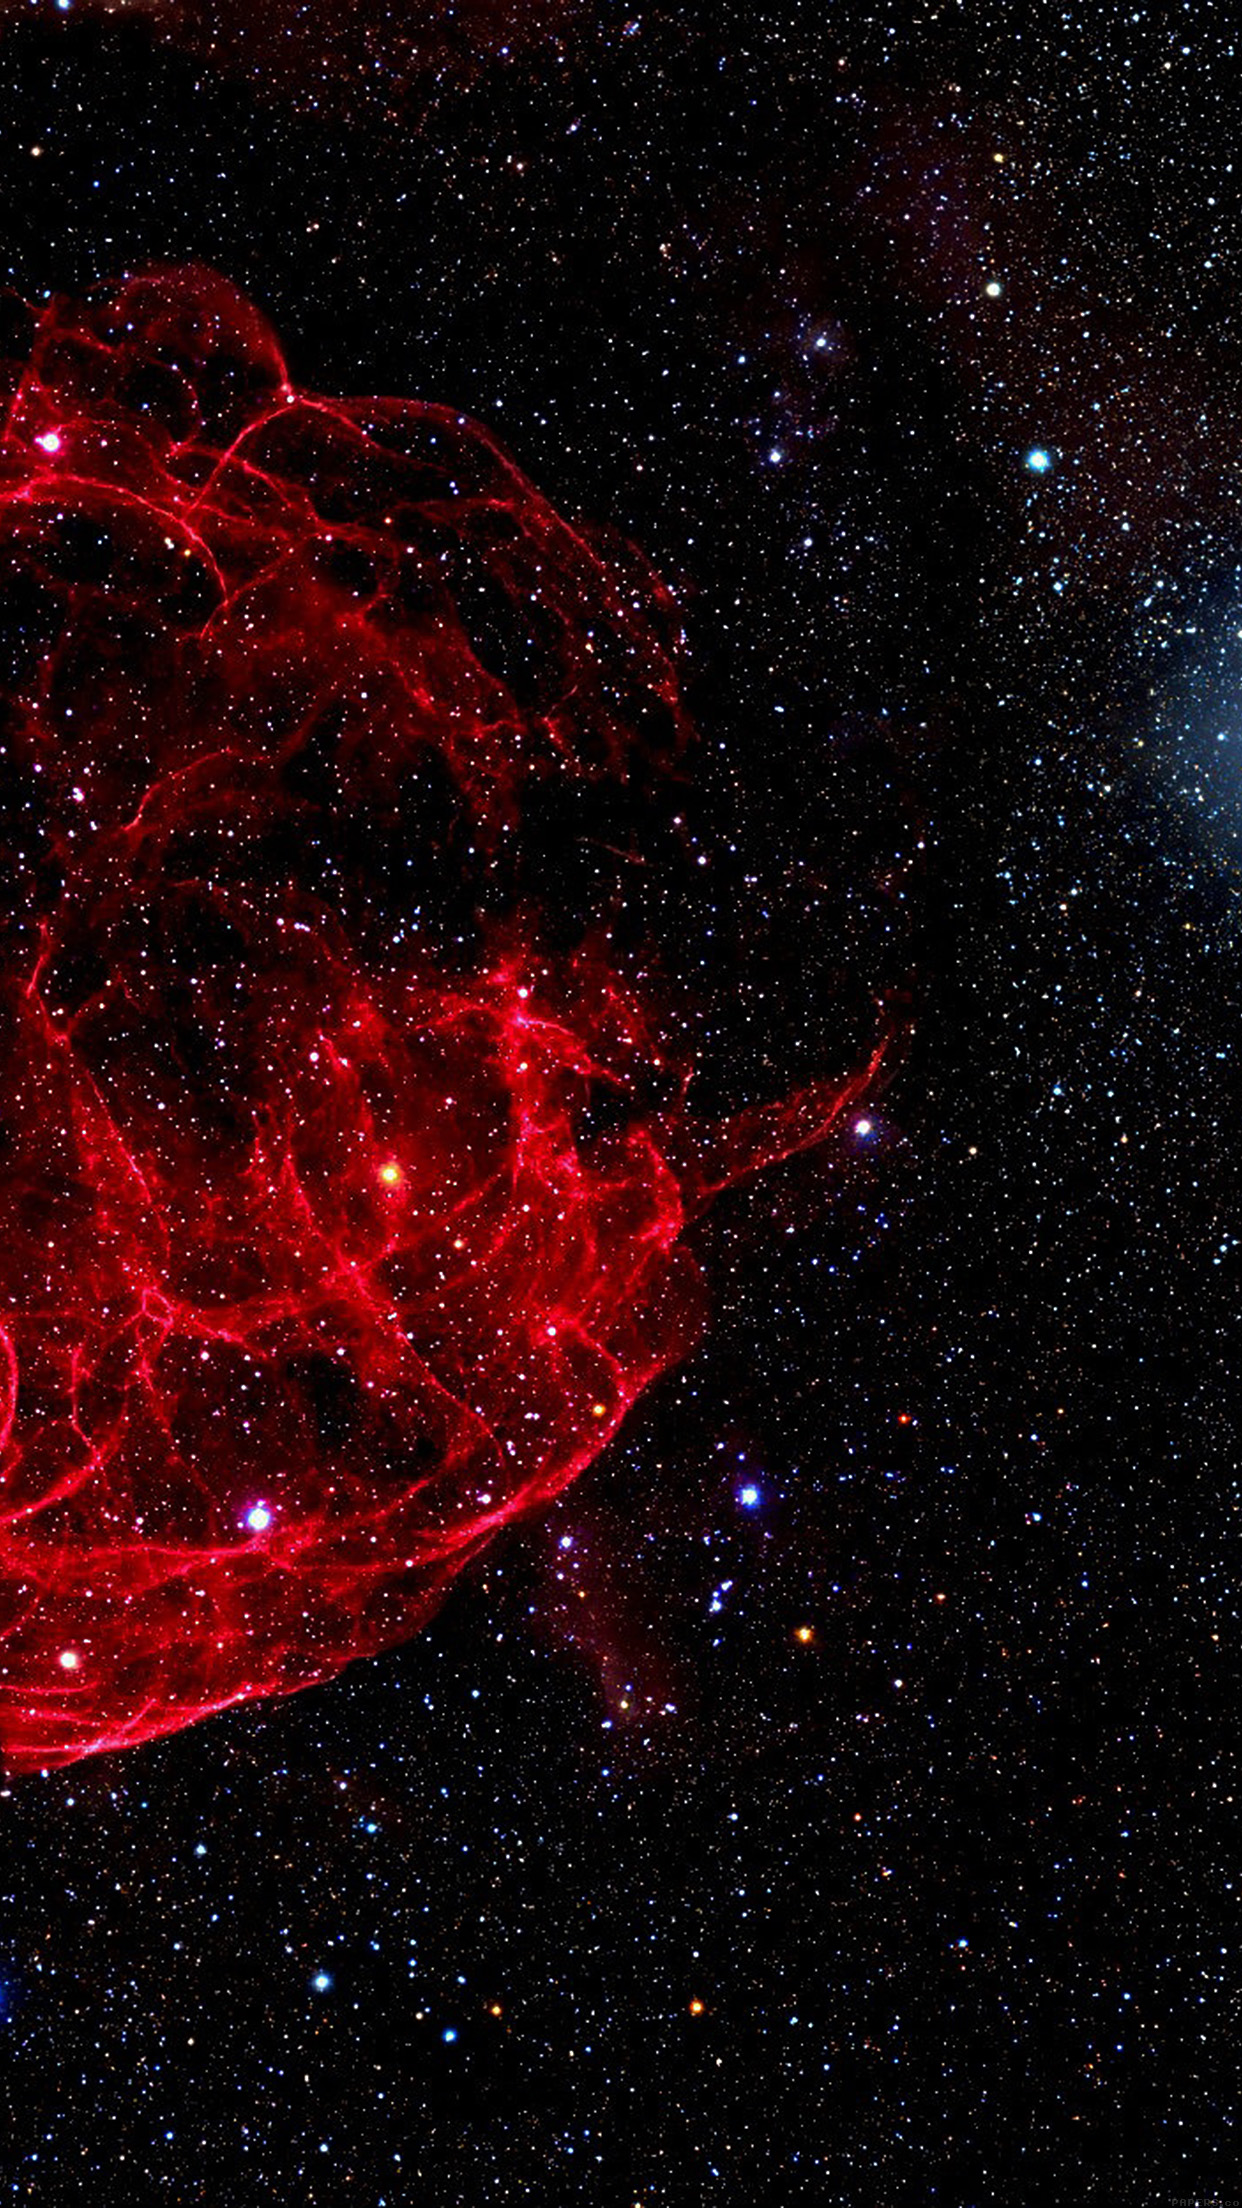 espacio iphone fondos de pantalla,espacio exterior,nebulosa,objeto astronómico,rojo,cielo